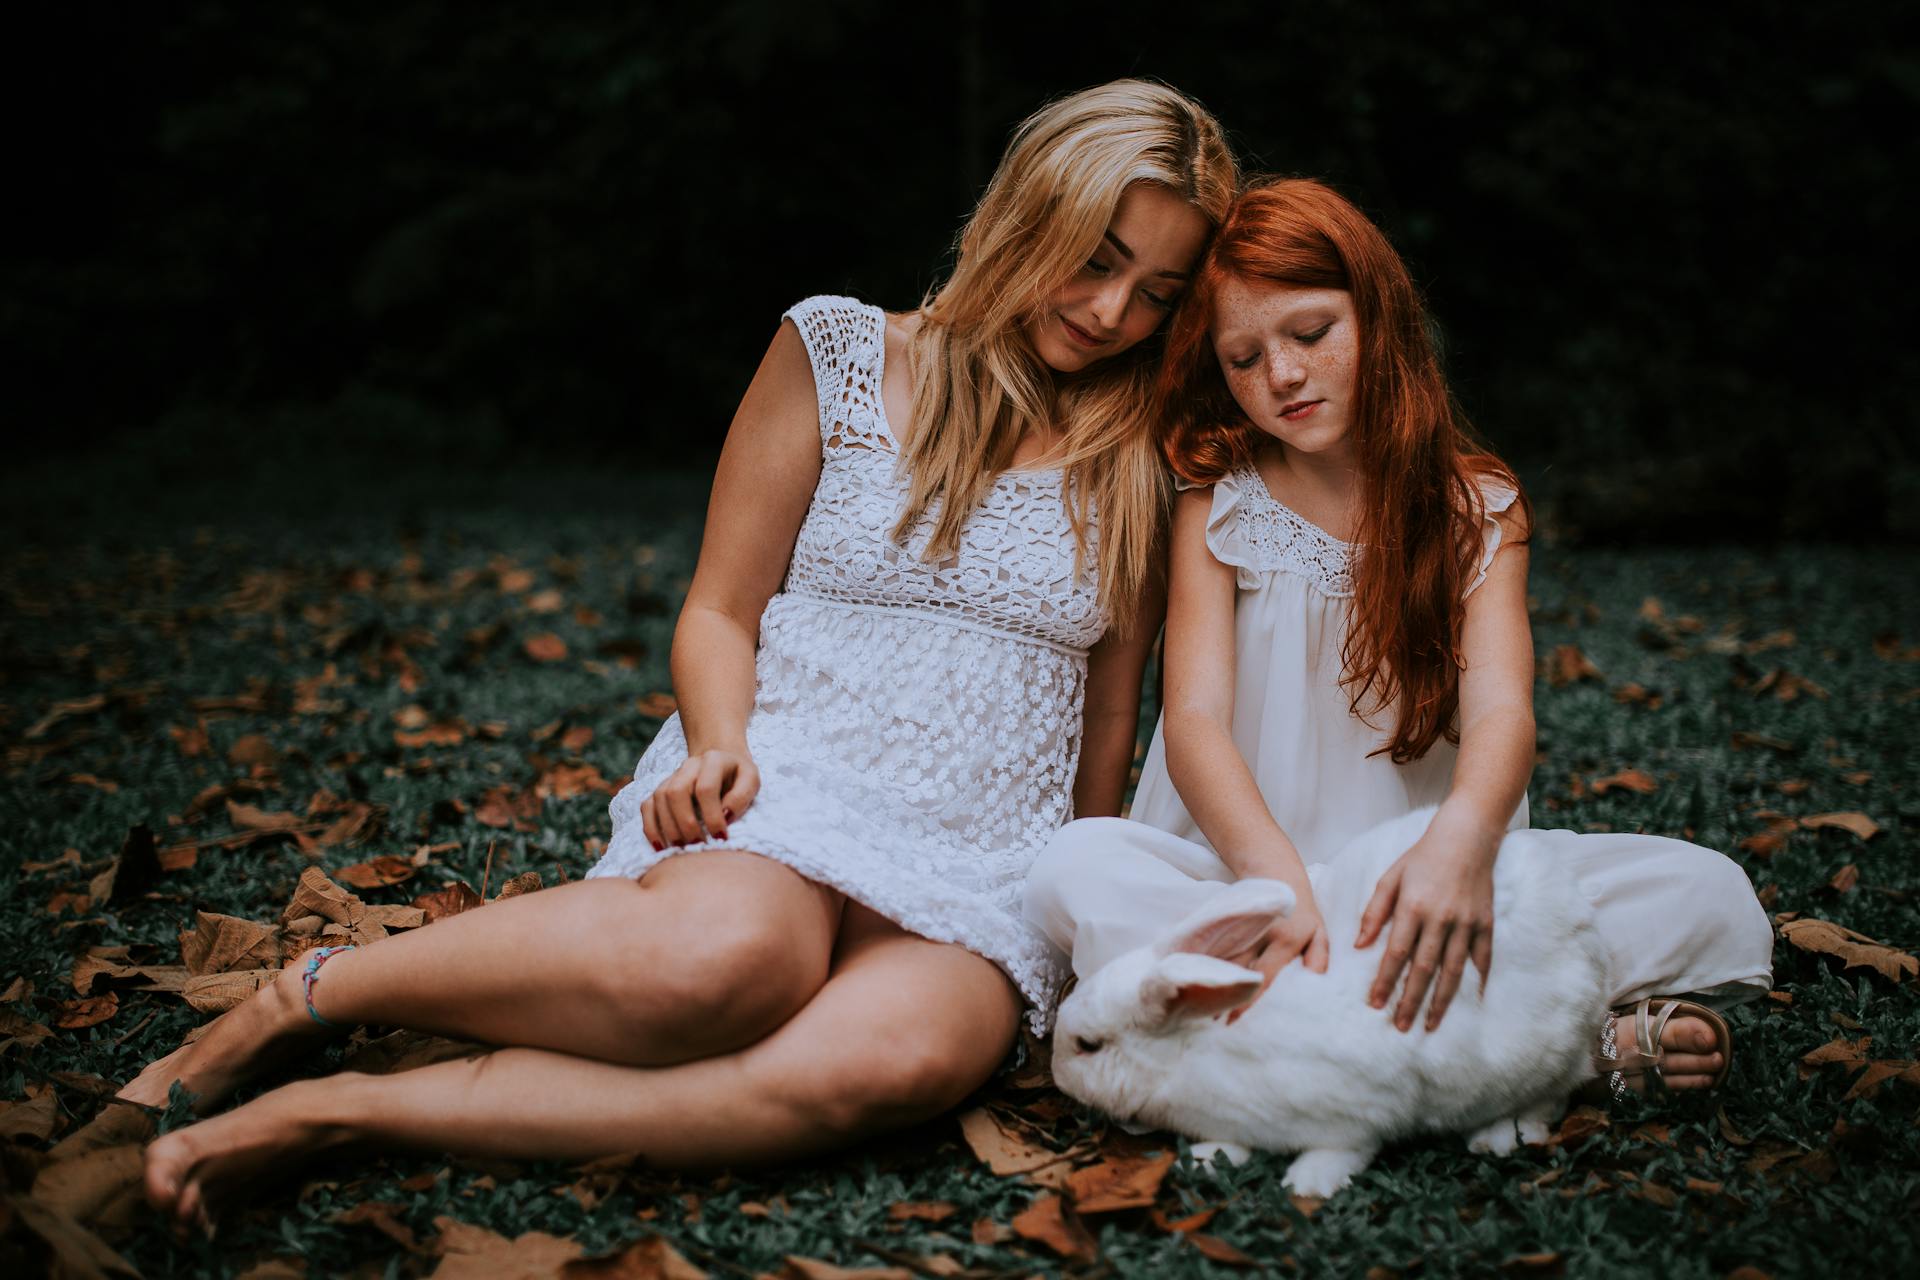 Une femme assise dans l'herbe avec une petite fille | Source : Pexels